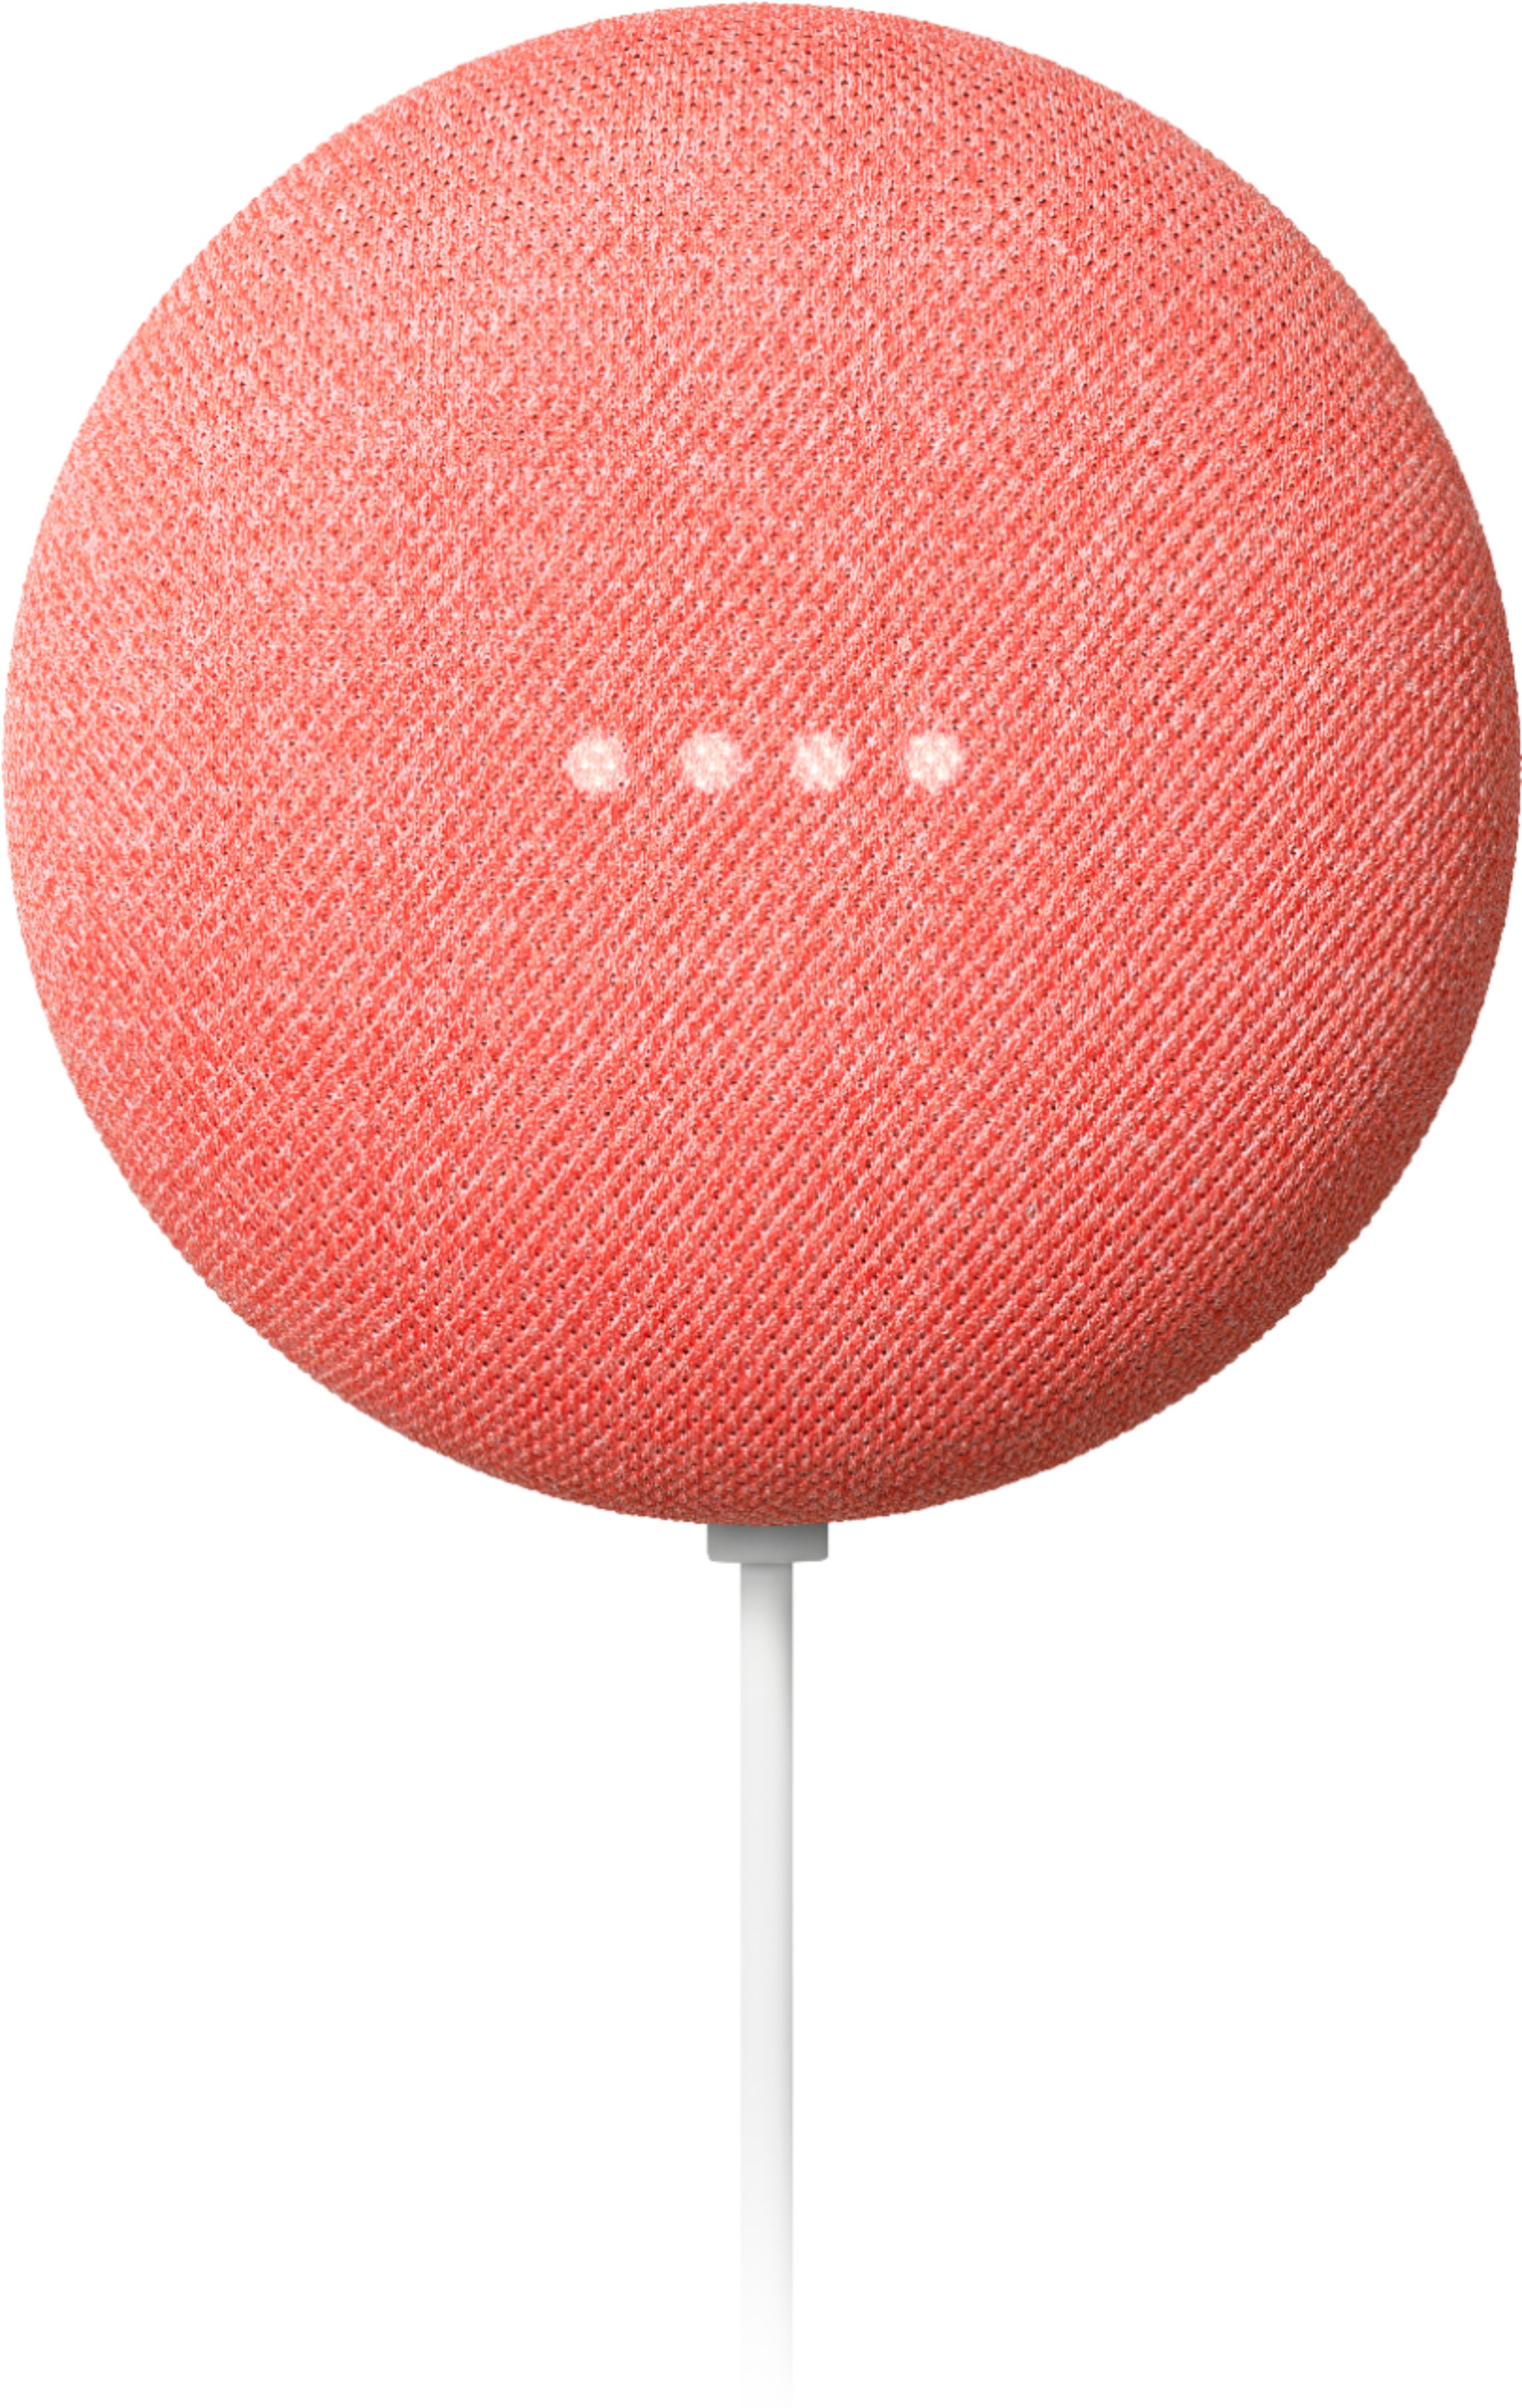 2nd Generation Smart Speaker Google Nest Mini Coral for sale online 